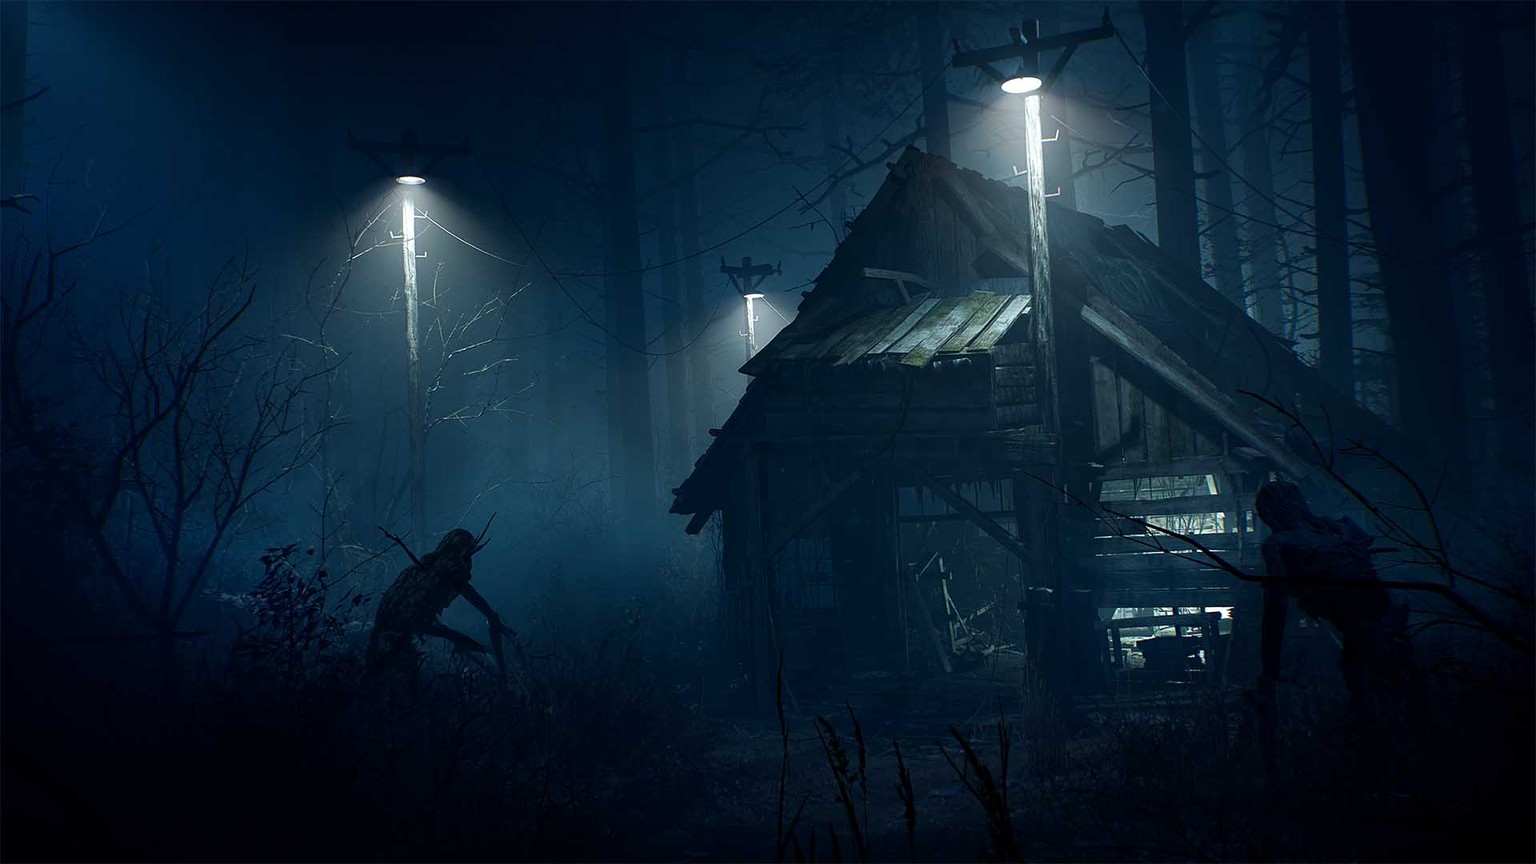 Ist die Gestalt vor der Hütte nur eine Holzskulptur oder ein finsteres Wesen?